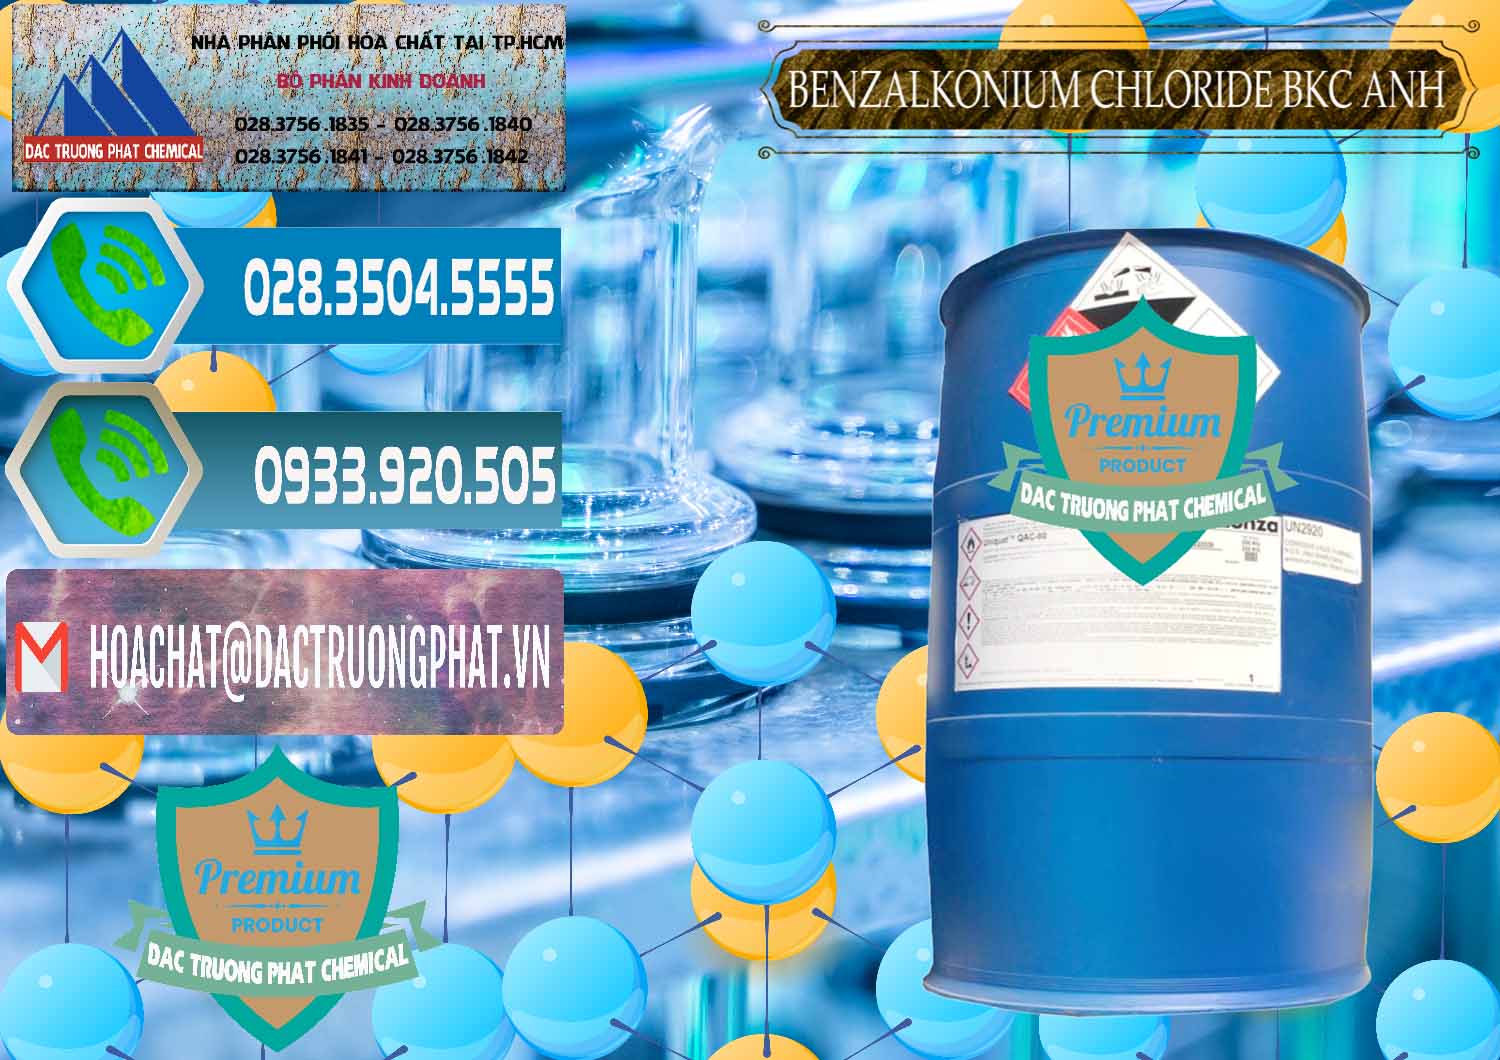 Nơi chuyên bán - phân phối BKC - Benzalkonium Chloride 80% Anh Quốc Uk Kingdoms - 0457 - Chuyên phân phối ( cung cấp ) hóa chất tại TP.HCM - congtyhoachat.net